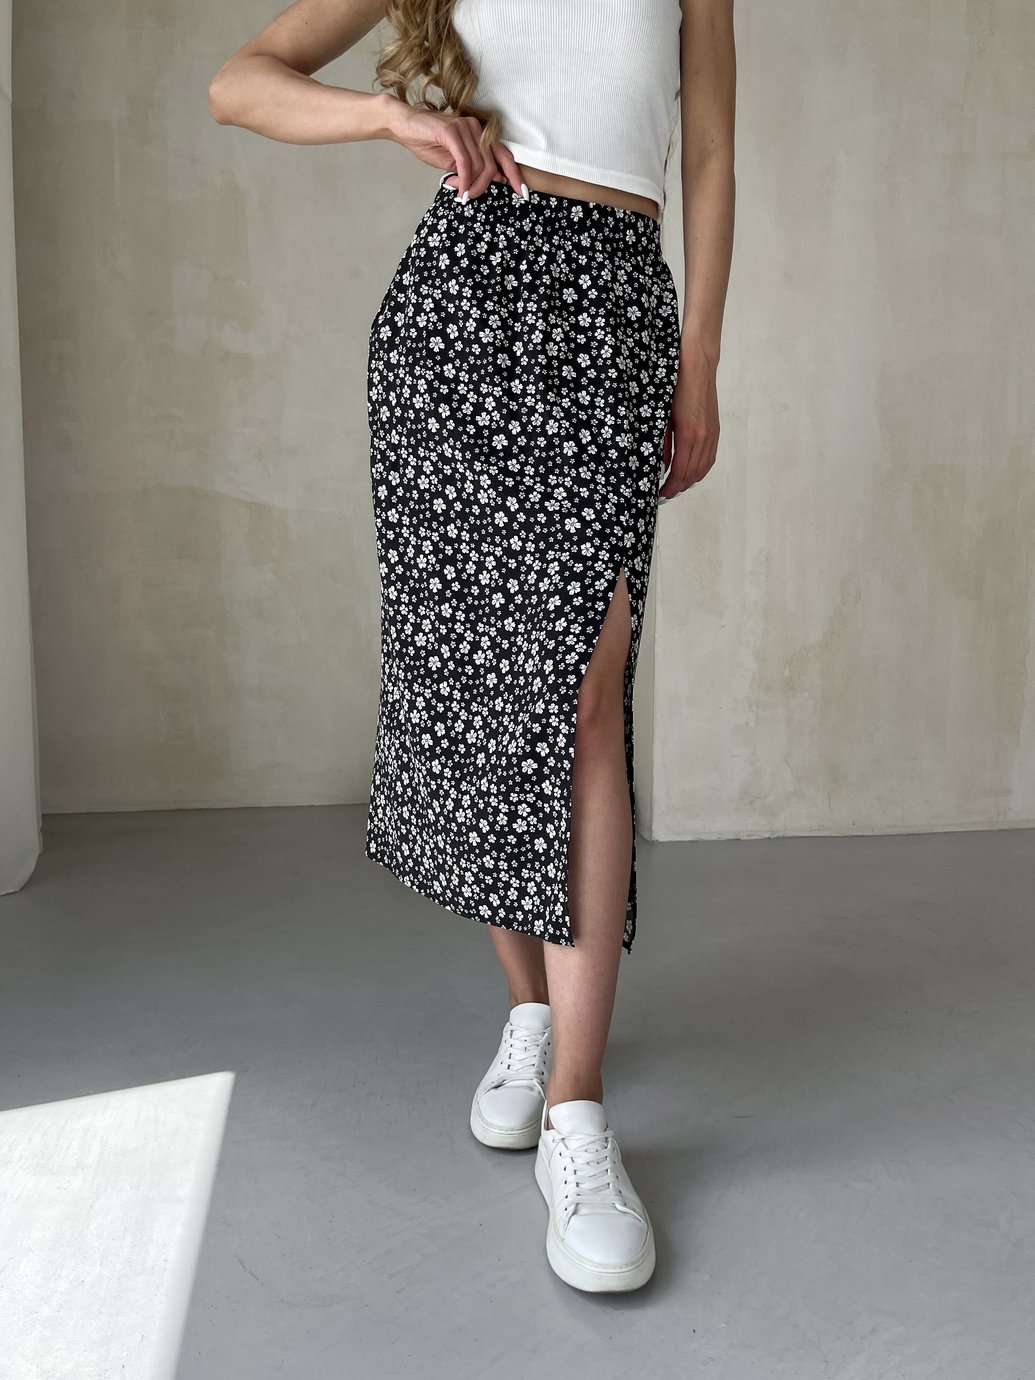 Купить Длинная женская юбка ниже колена с размером в цветочек Merlini Равенна 400000122, размер 42-44 (S-M) в интернет-магазине